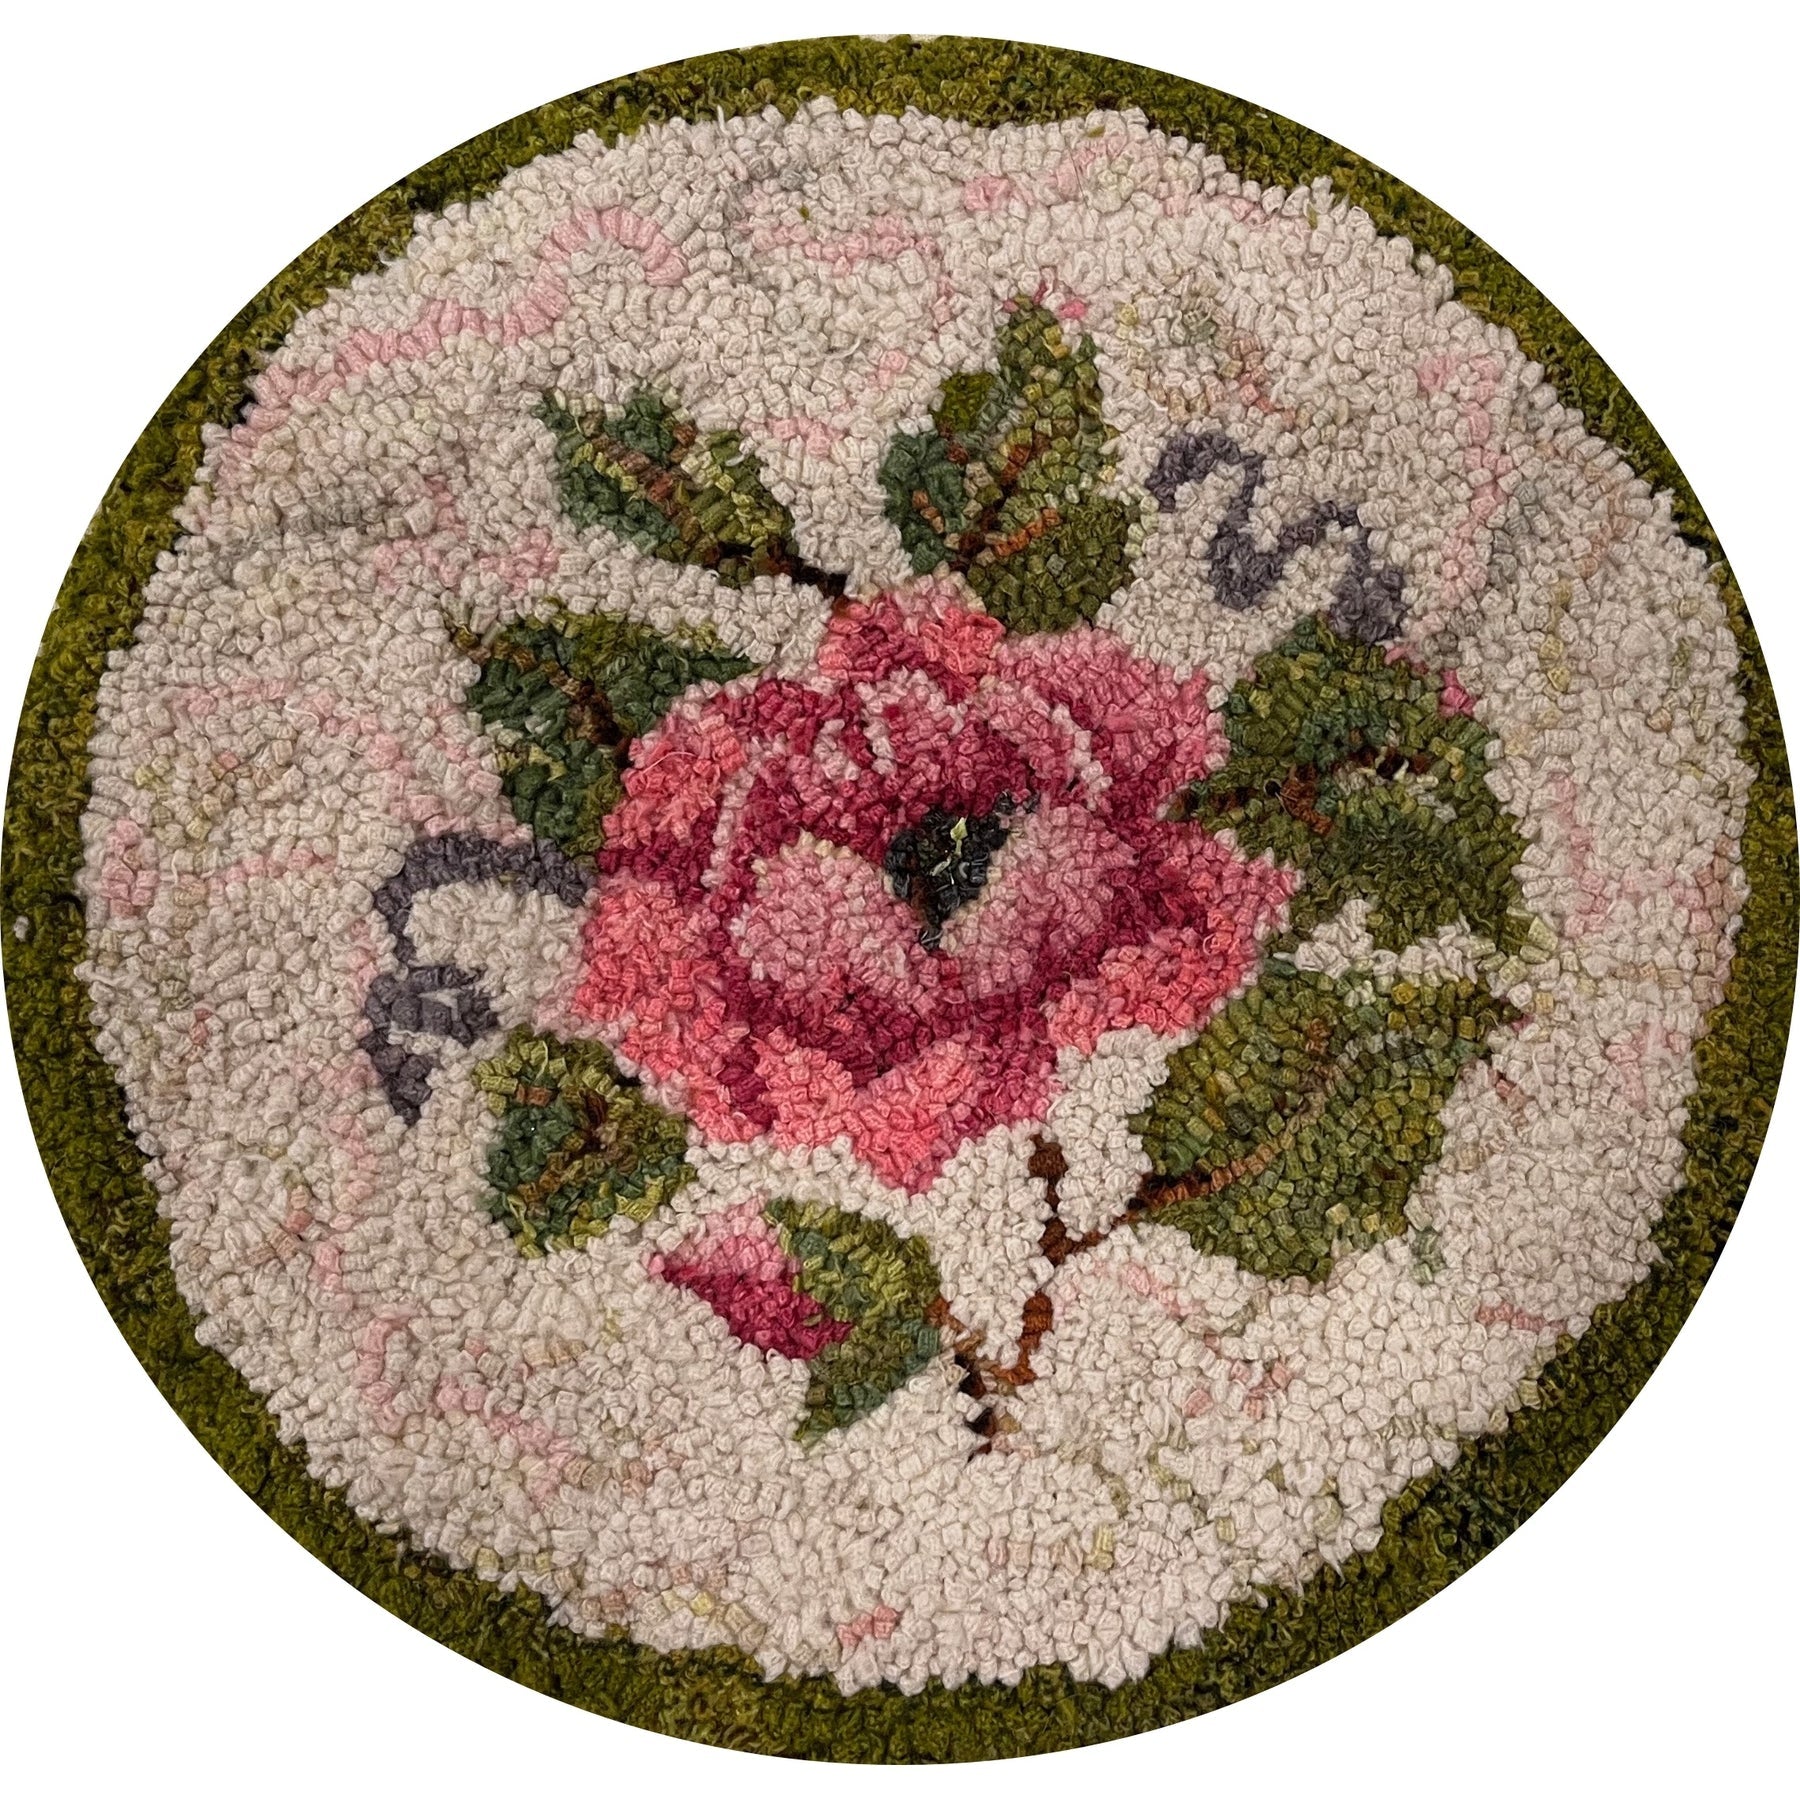 Simple Rose, rug hooked by Sherrie Petersen